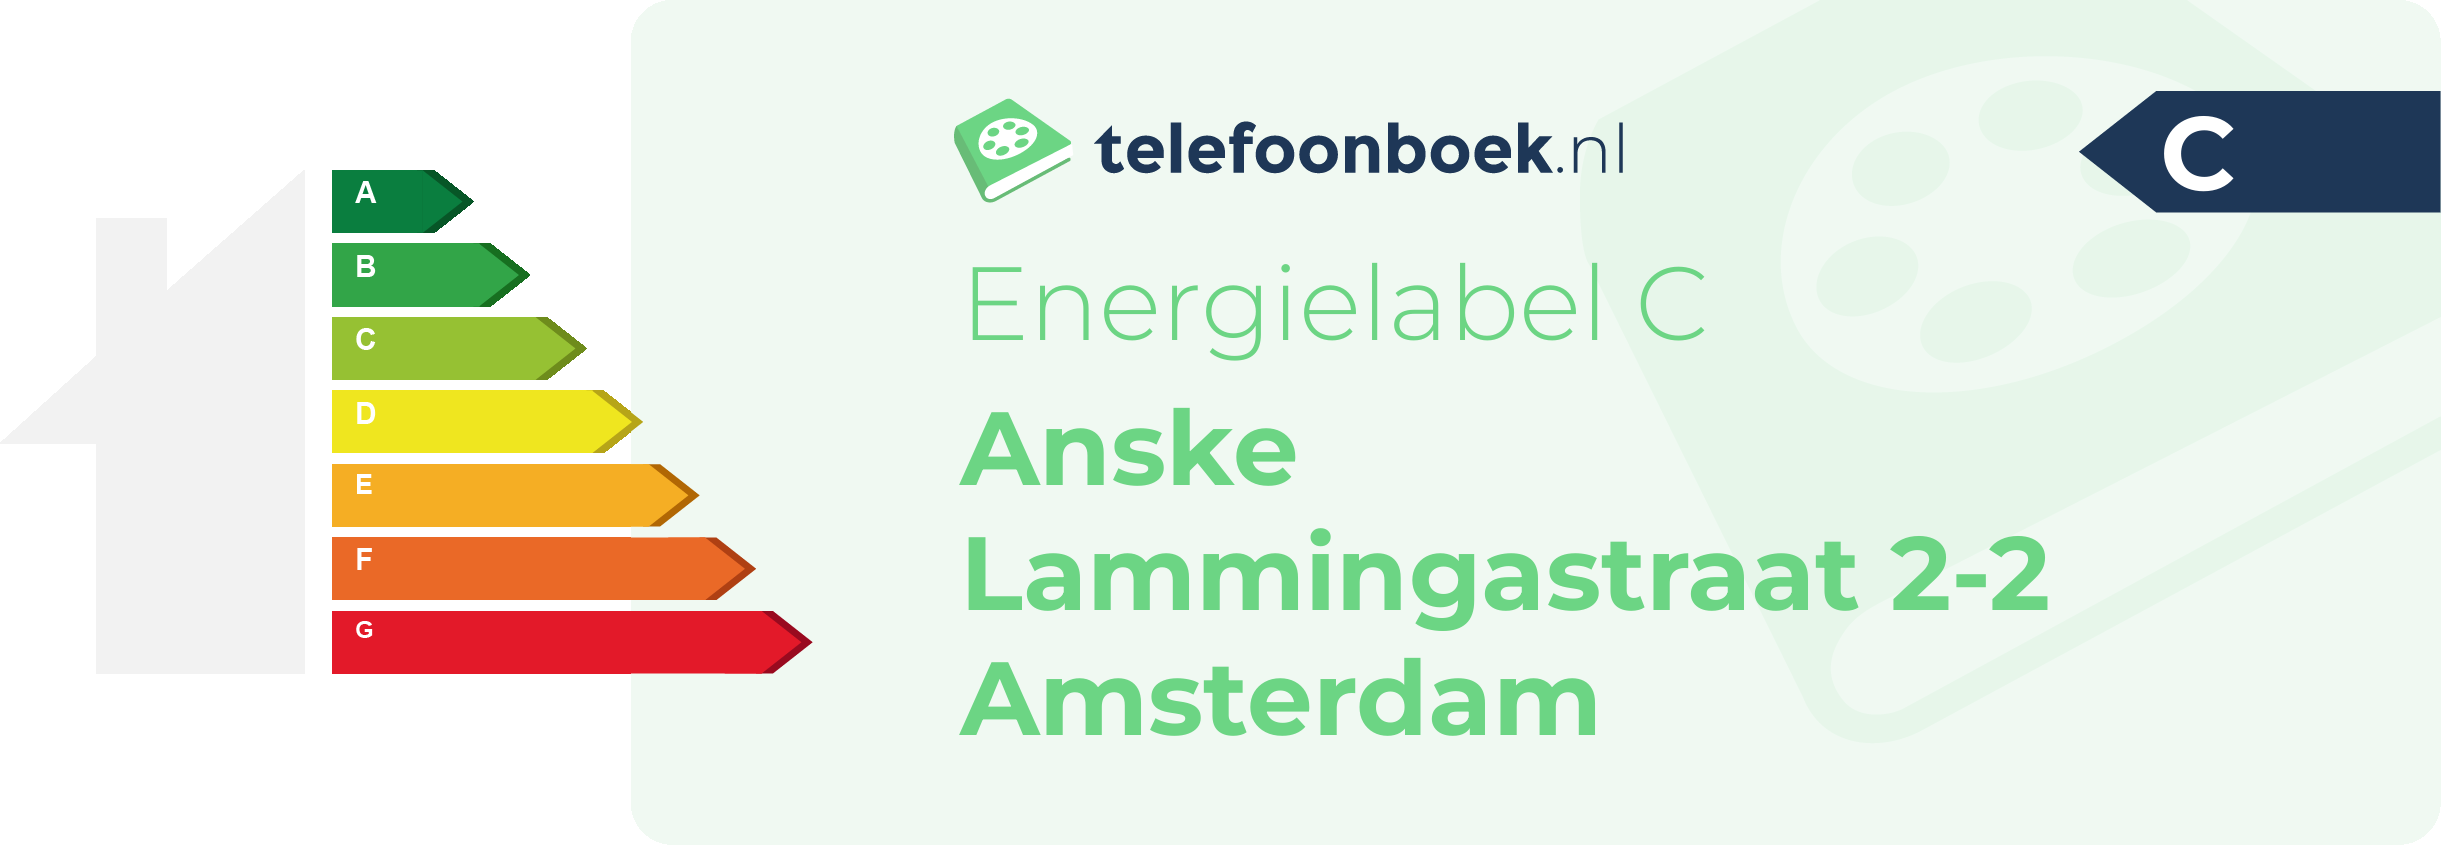 Energielabel Anske Lammingastraat 2-2 Amsterdam